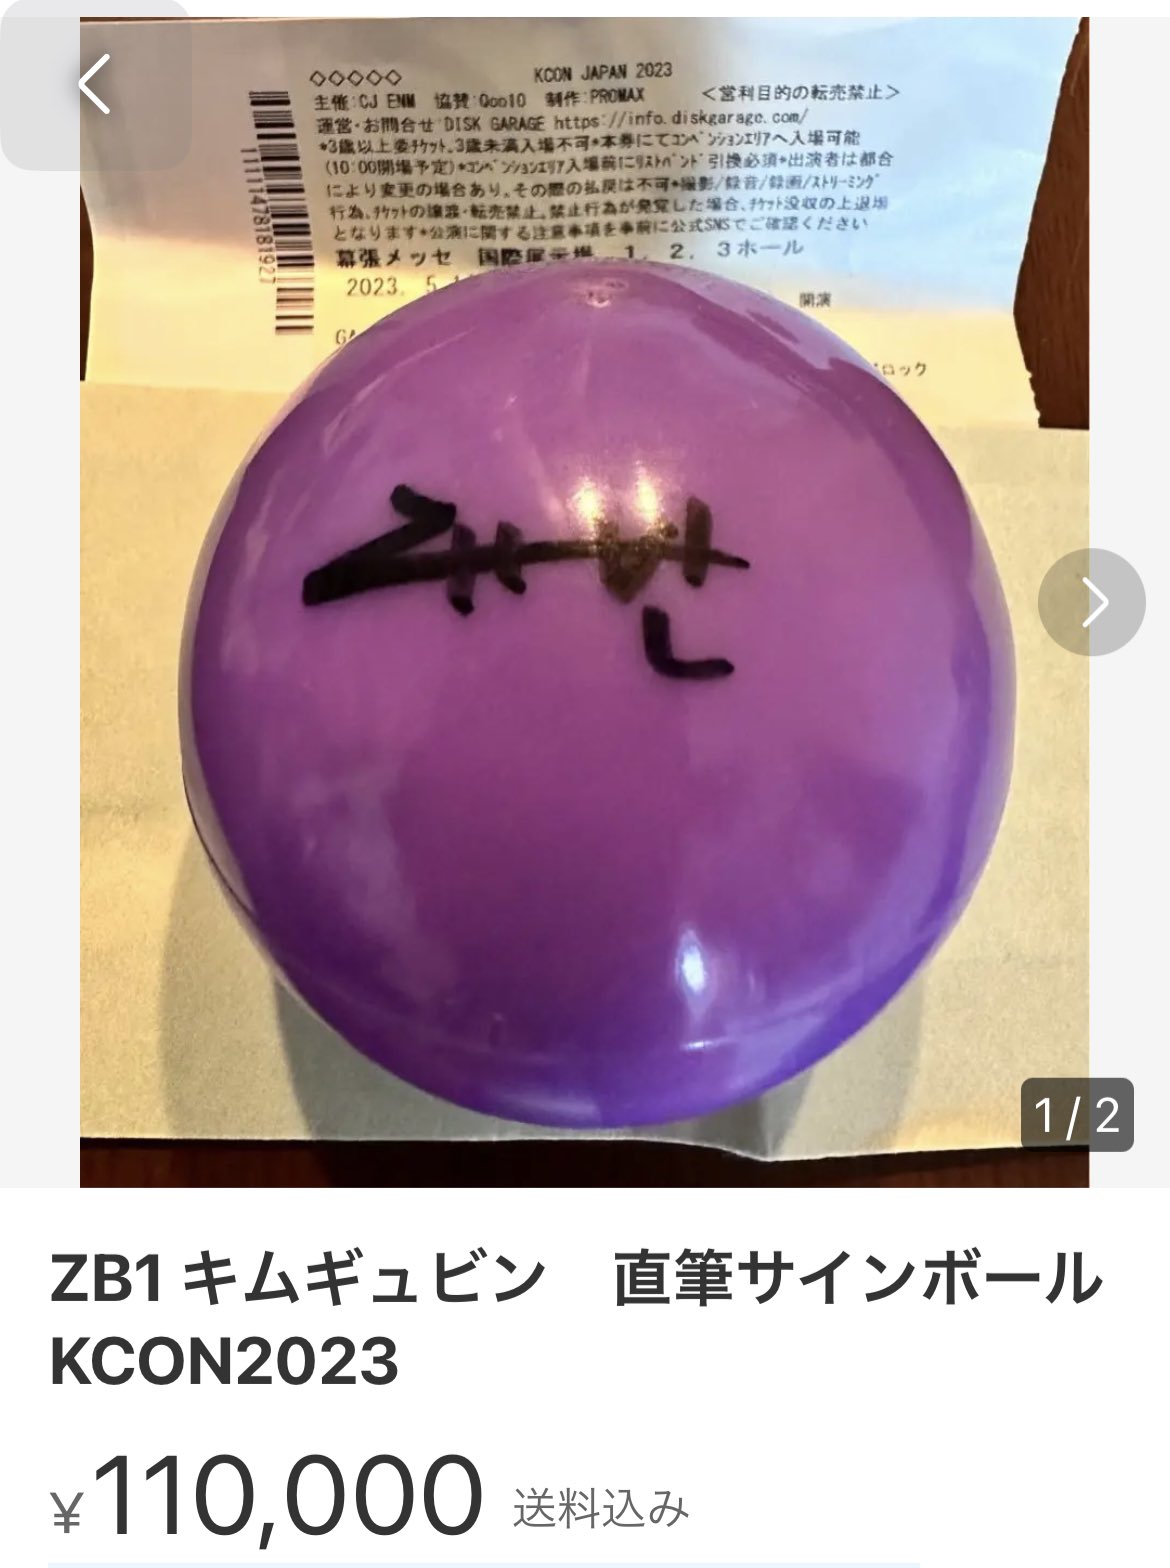 ZB1 キムテレ 直筆サインボール | solabot.com